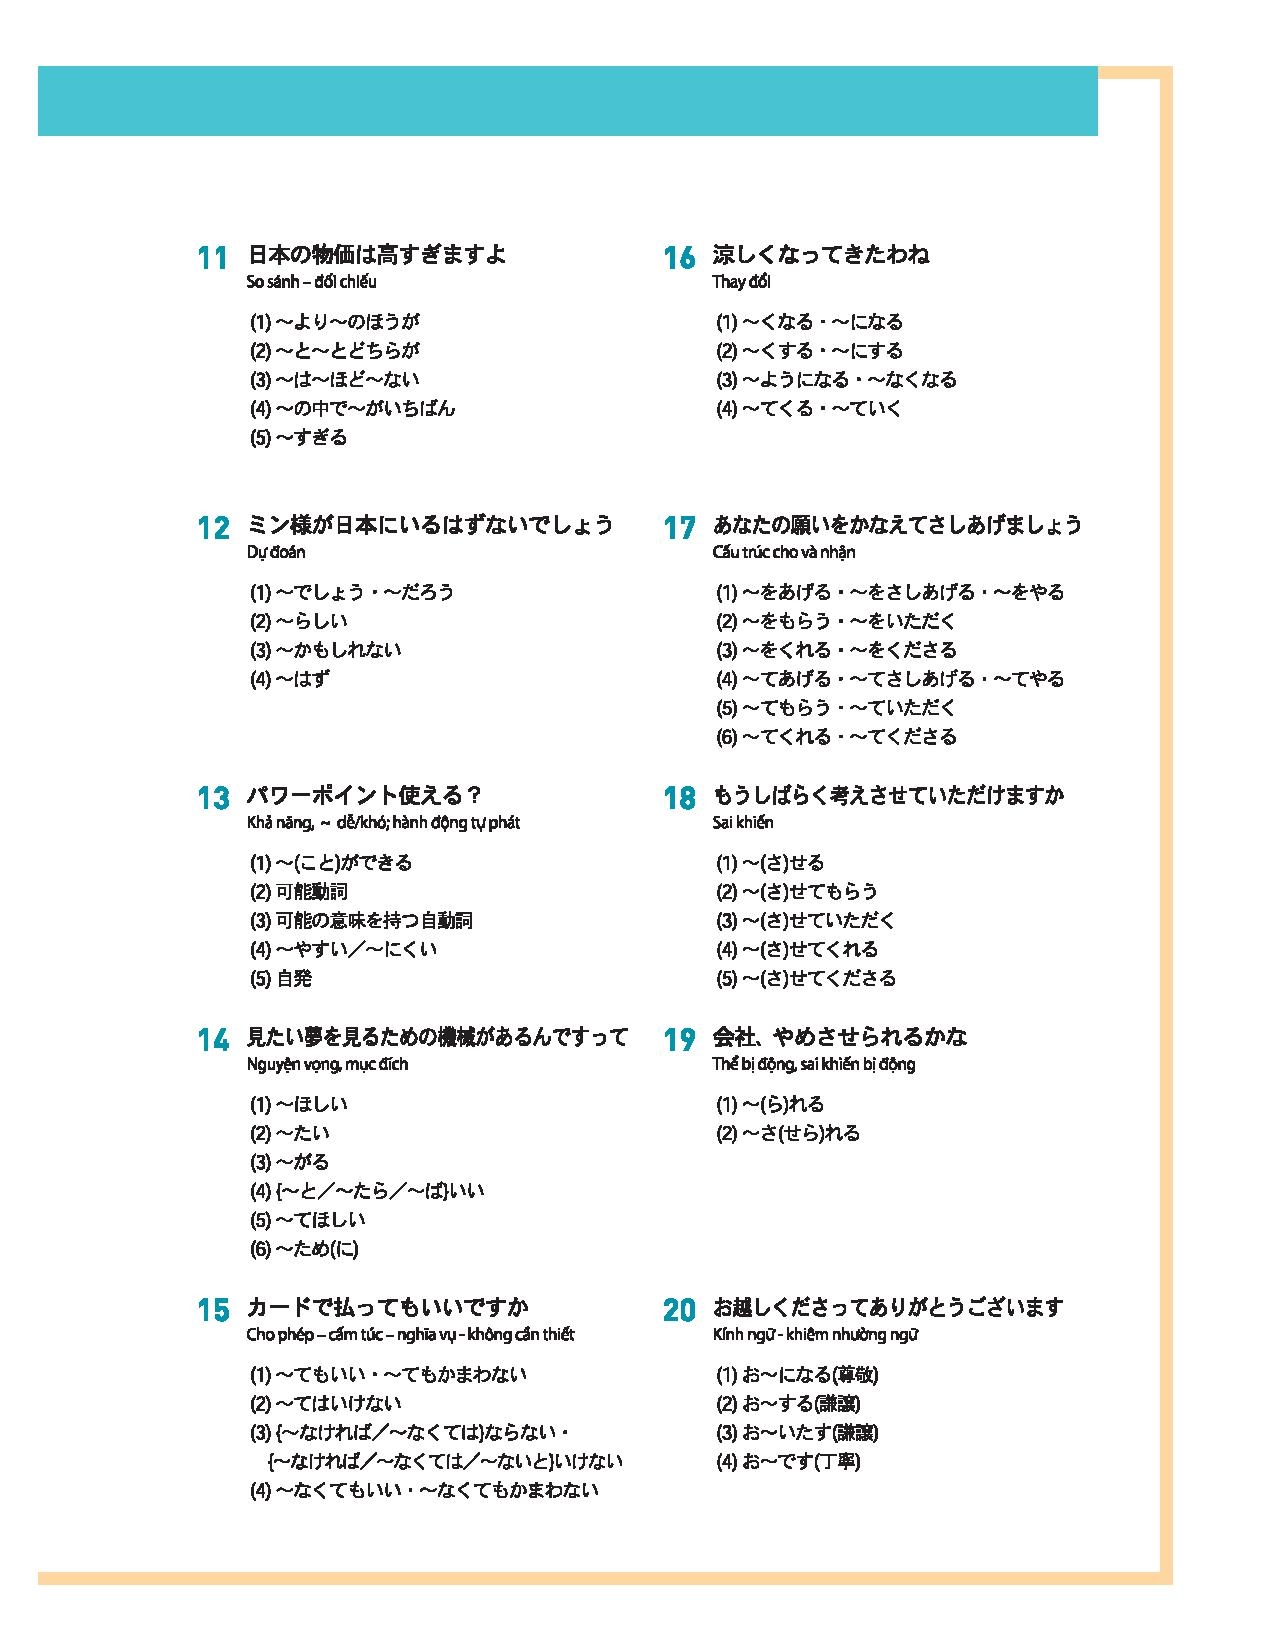 Tiếng Nhật Thật Đơn Giản Trong Giao Tiếp Hằng Ngày - Sơ Trung Cấp 3 PDF